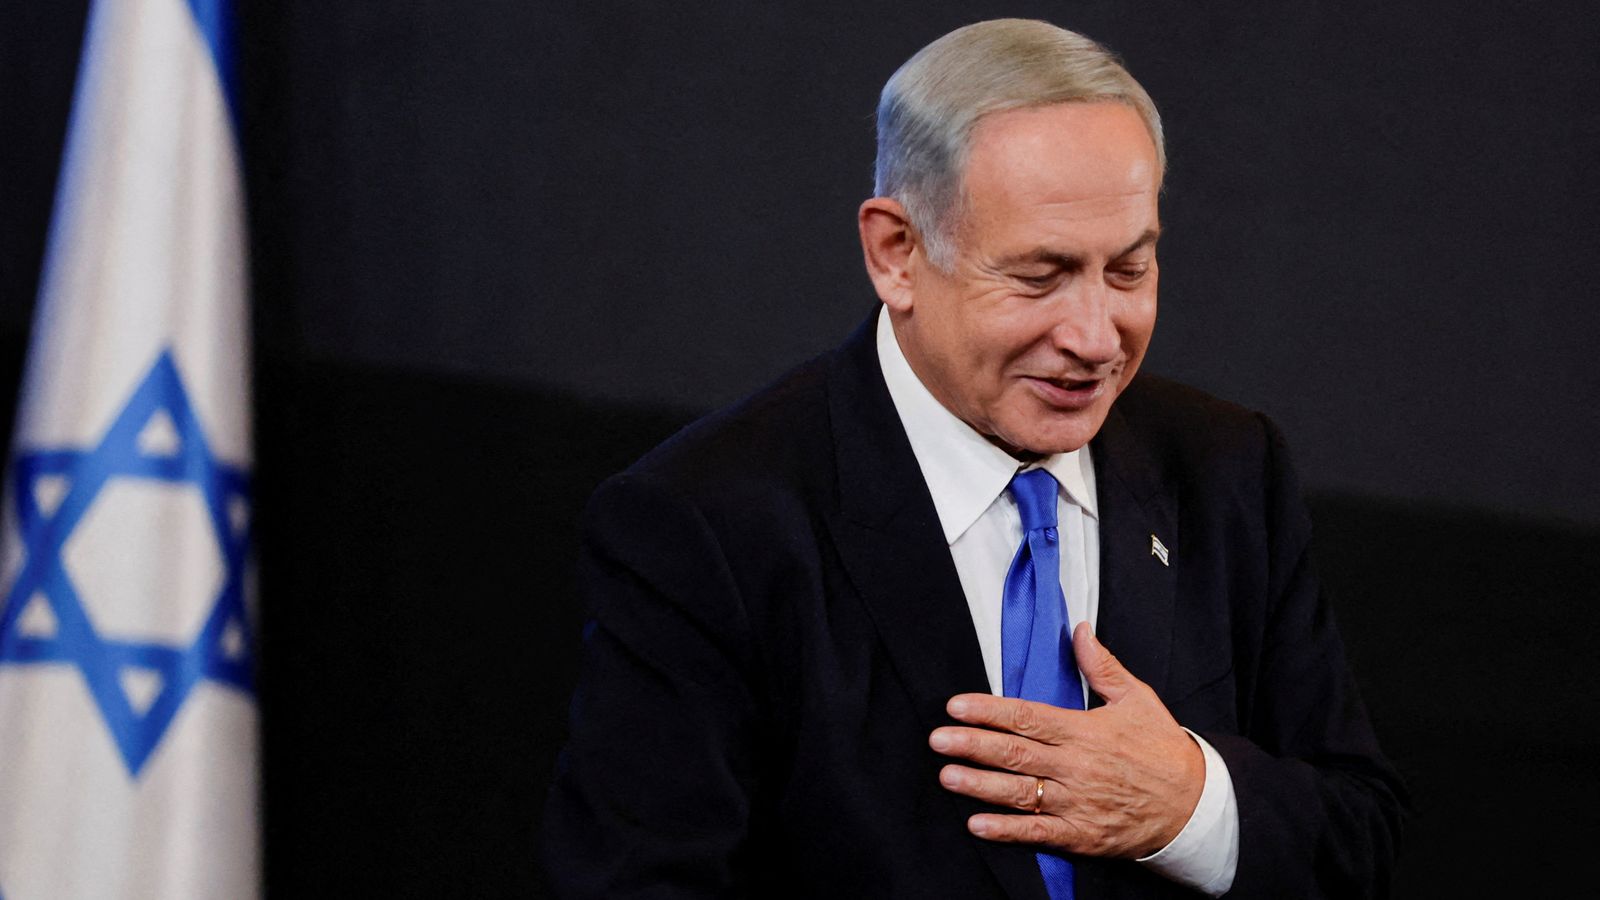 Биньямин Нетаньяху готовится сформировать правительство после того, как премьер-министр признал поражение на выборах |  Новости мира